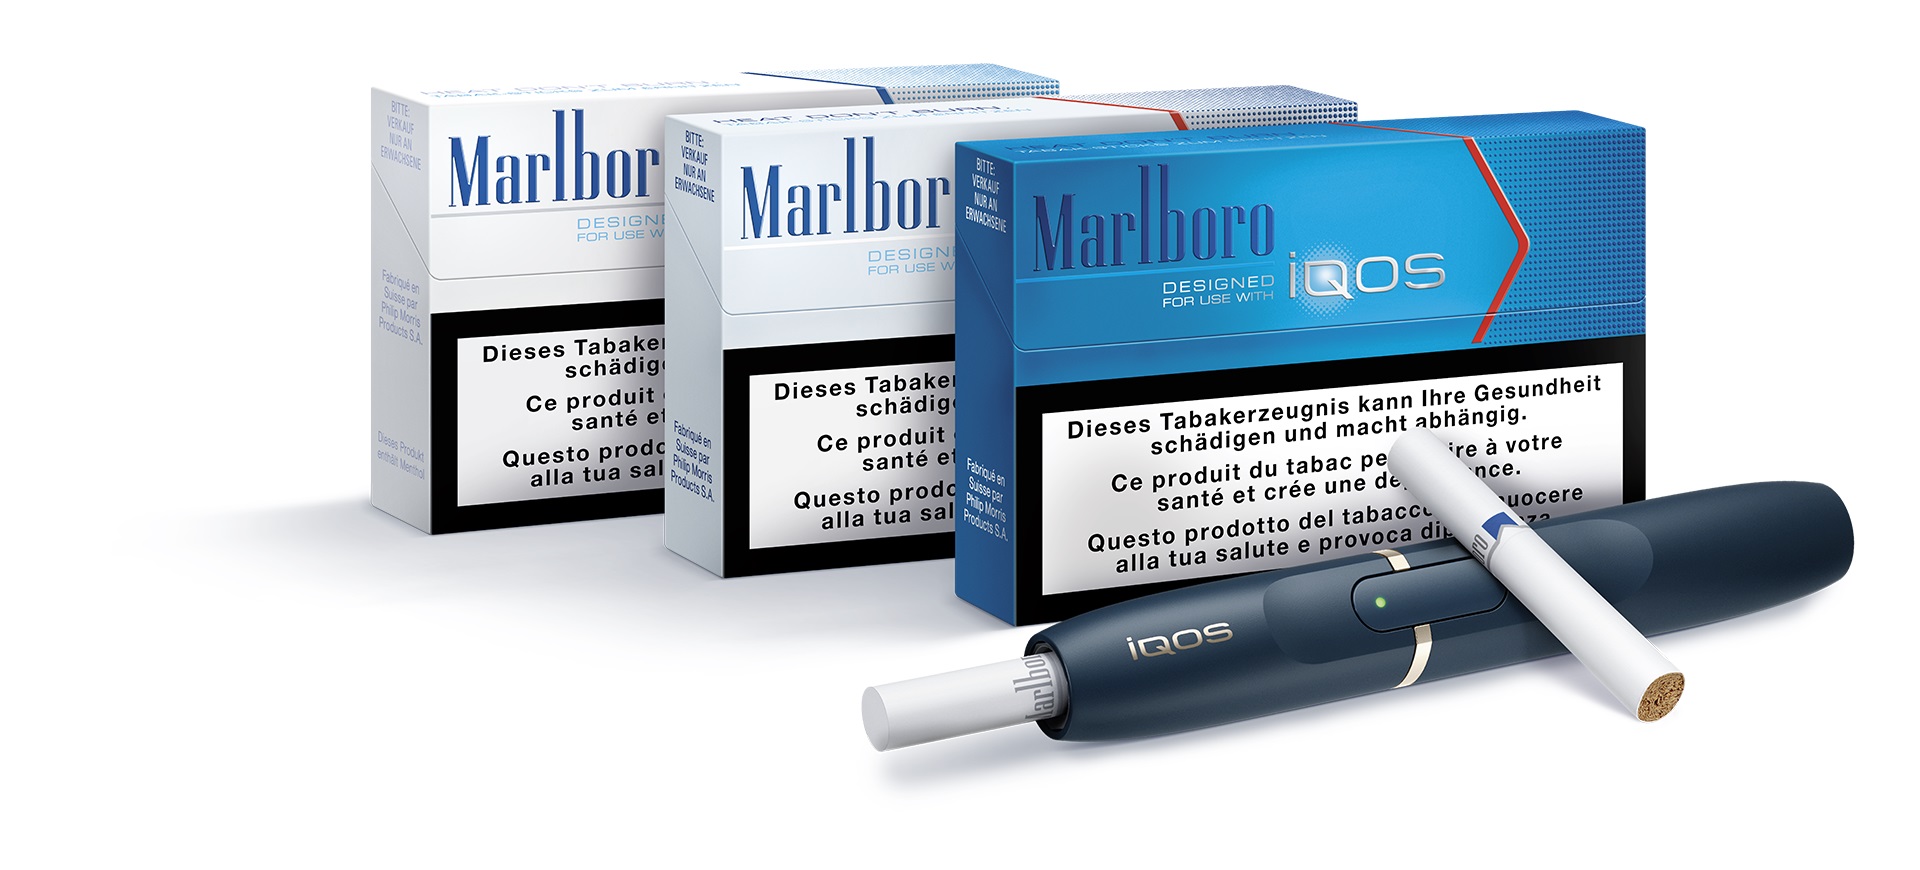 Philip Morris S.A. lanciert iQOS in der Schweiz, ein revolutionäres System  das den